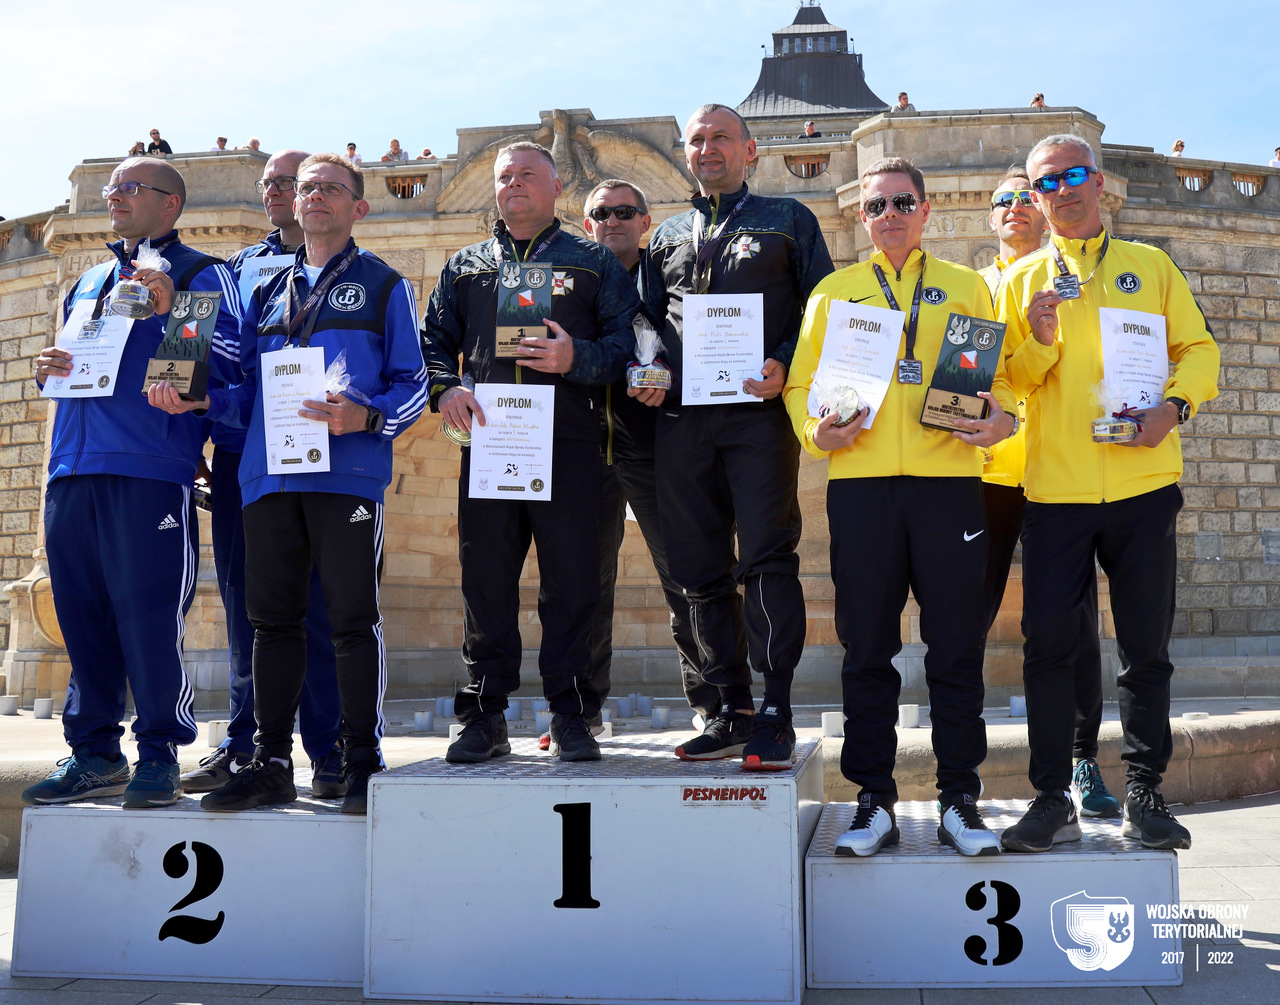 mistrzostwa wot w bno 2022 1a Lubelscy terytorialsi mistrzami WOT w biegu na orientację.